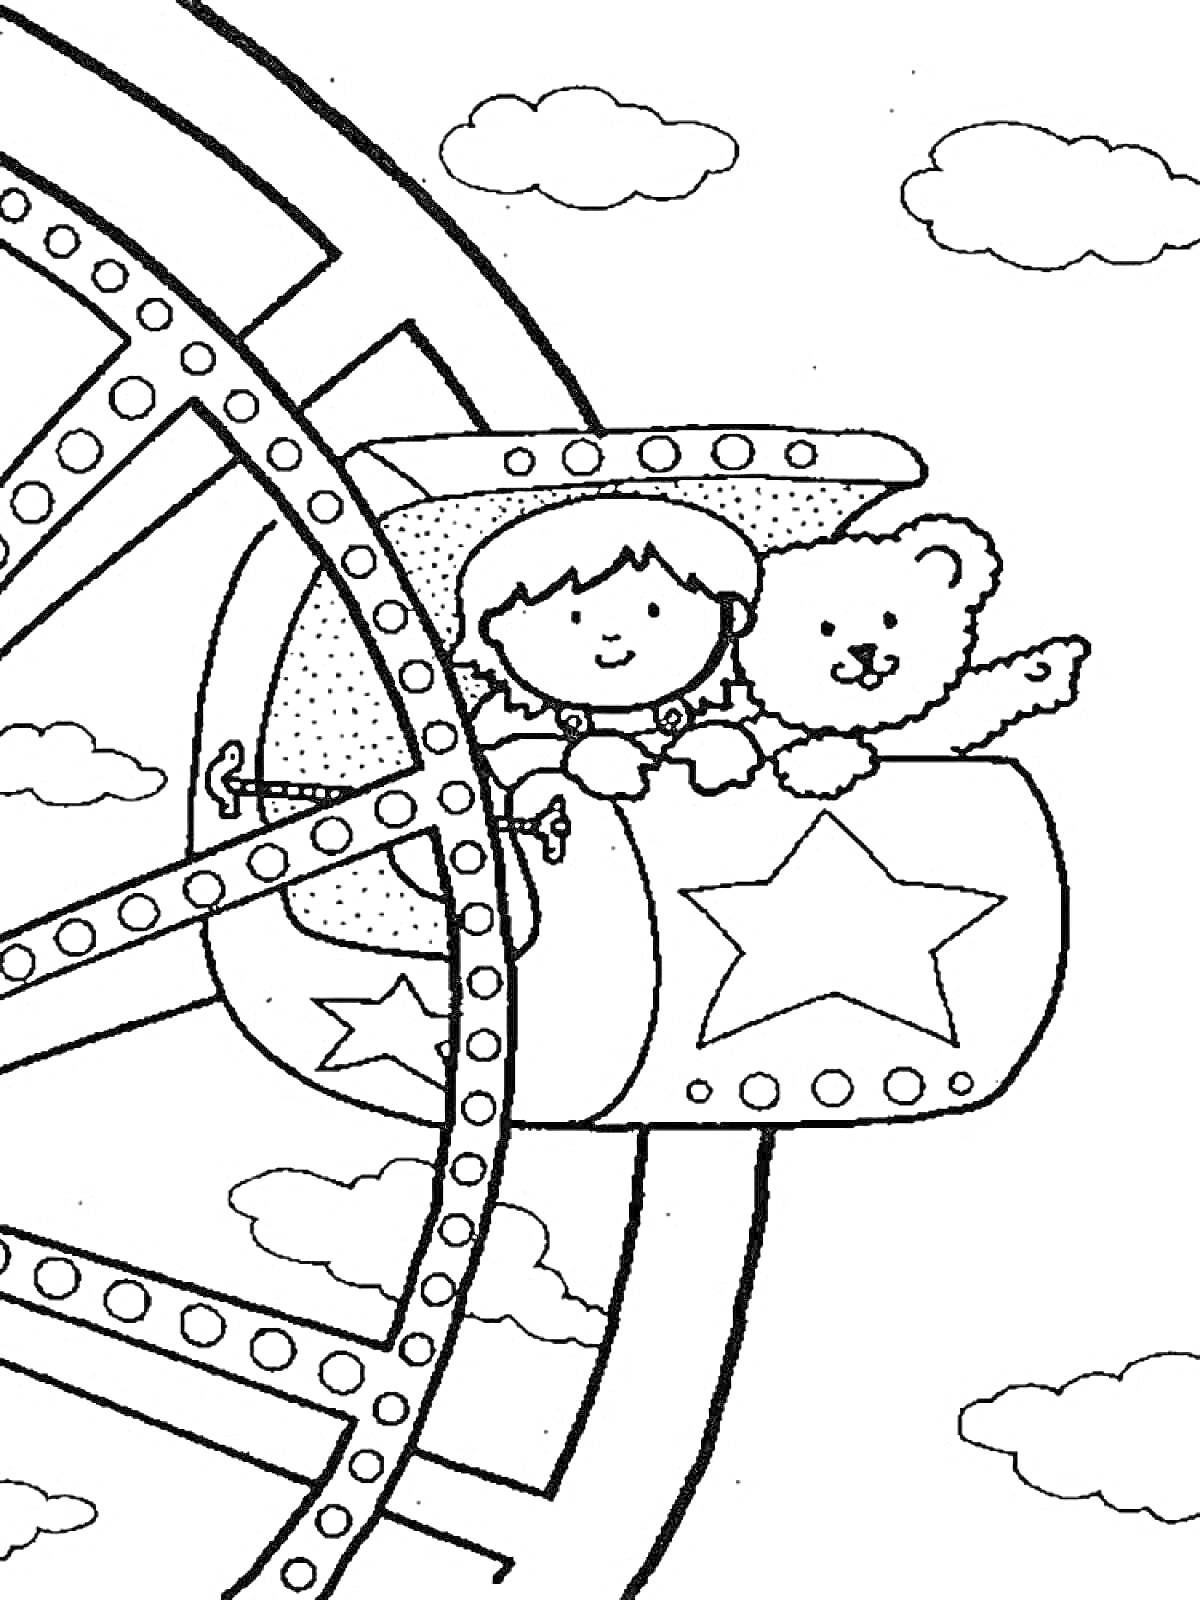 Раскраска Мальчик и плюшевый мишка на колесе обозрения с облаками на заднем плане